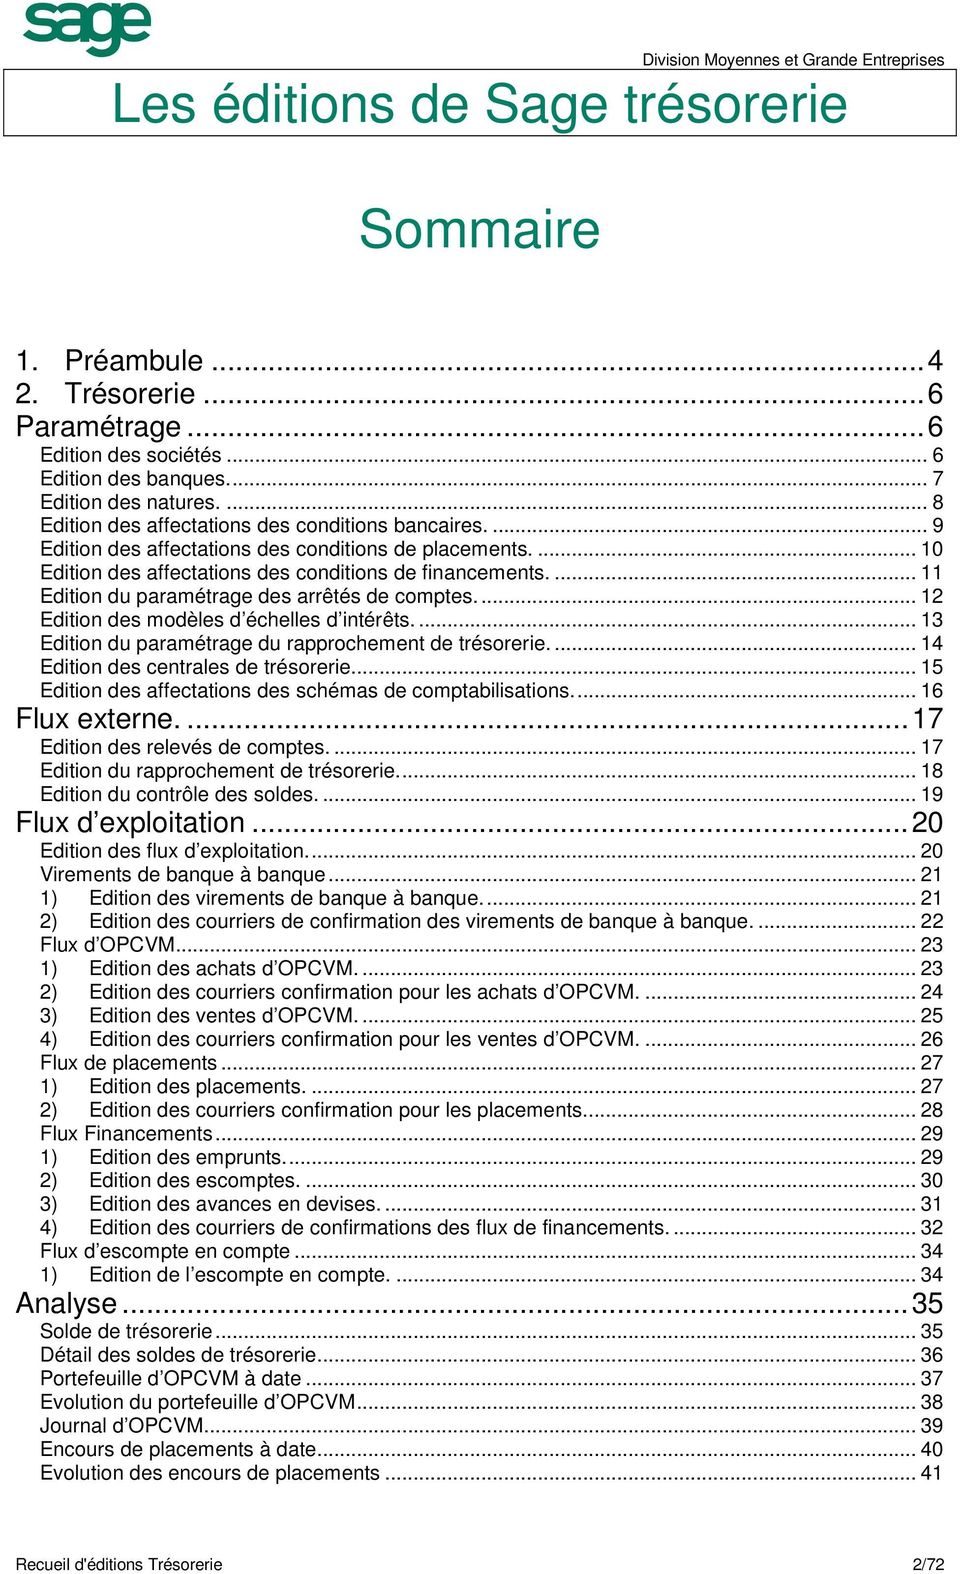 ... 11 Edition du paramétrage des arrêtés de comptes.... 12 Edition des modèles d échelles d intérêts.... 13 Edition du paramétrage du rapprochement de trésorerie.